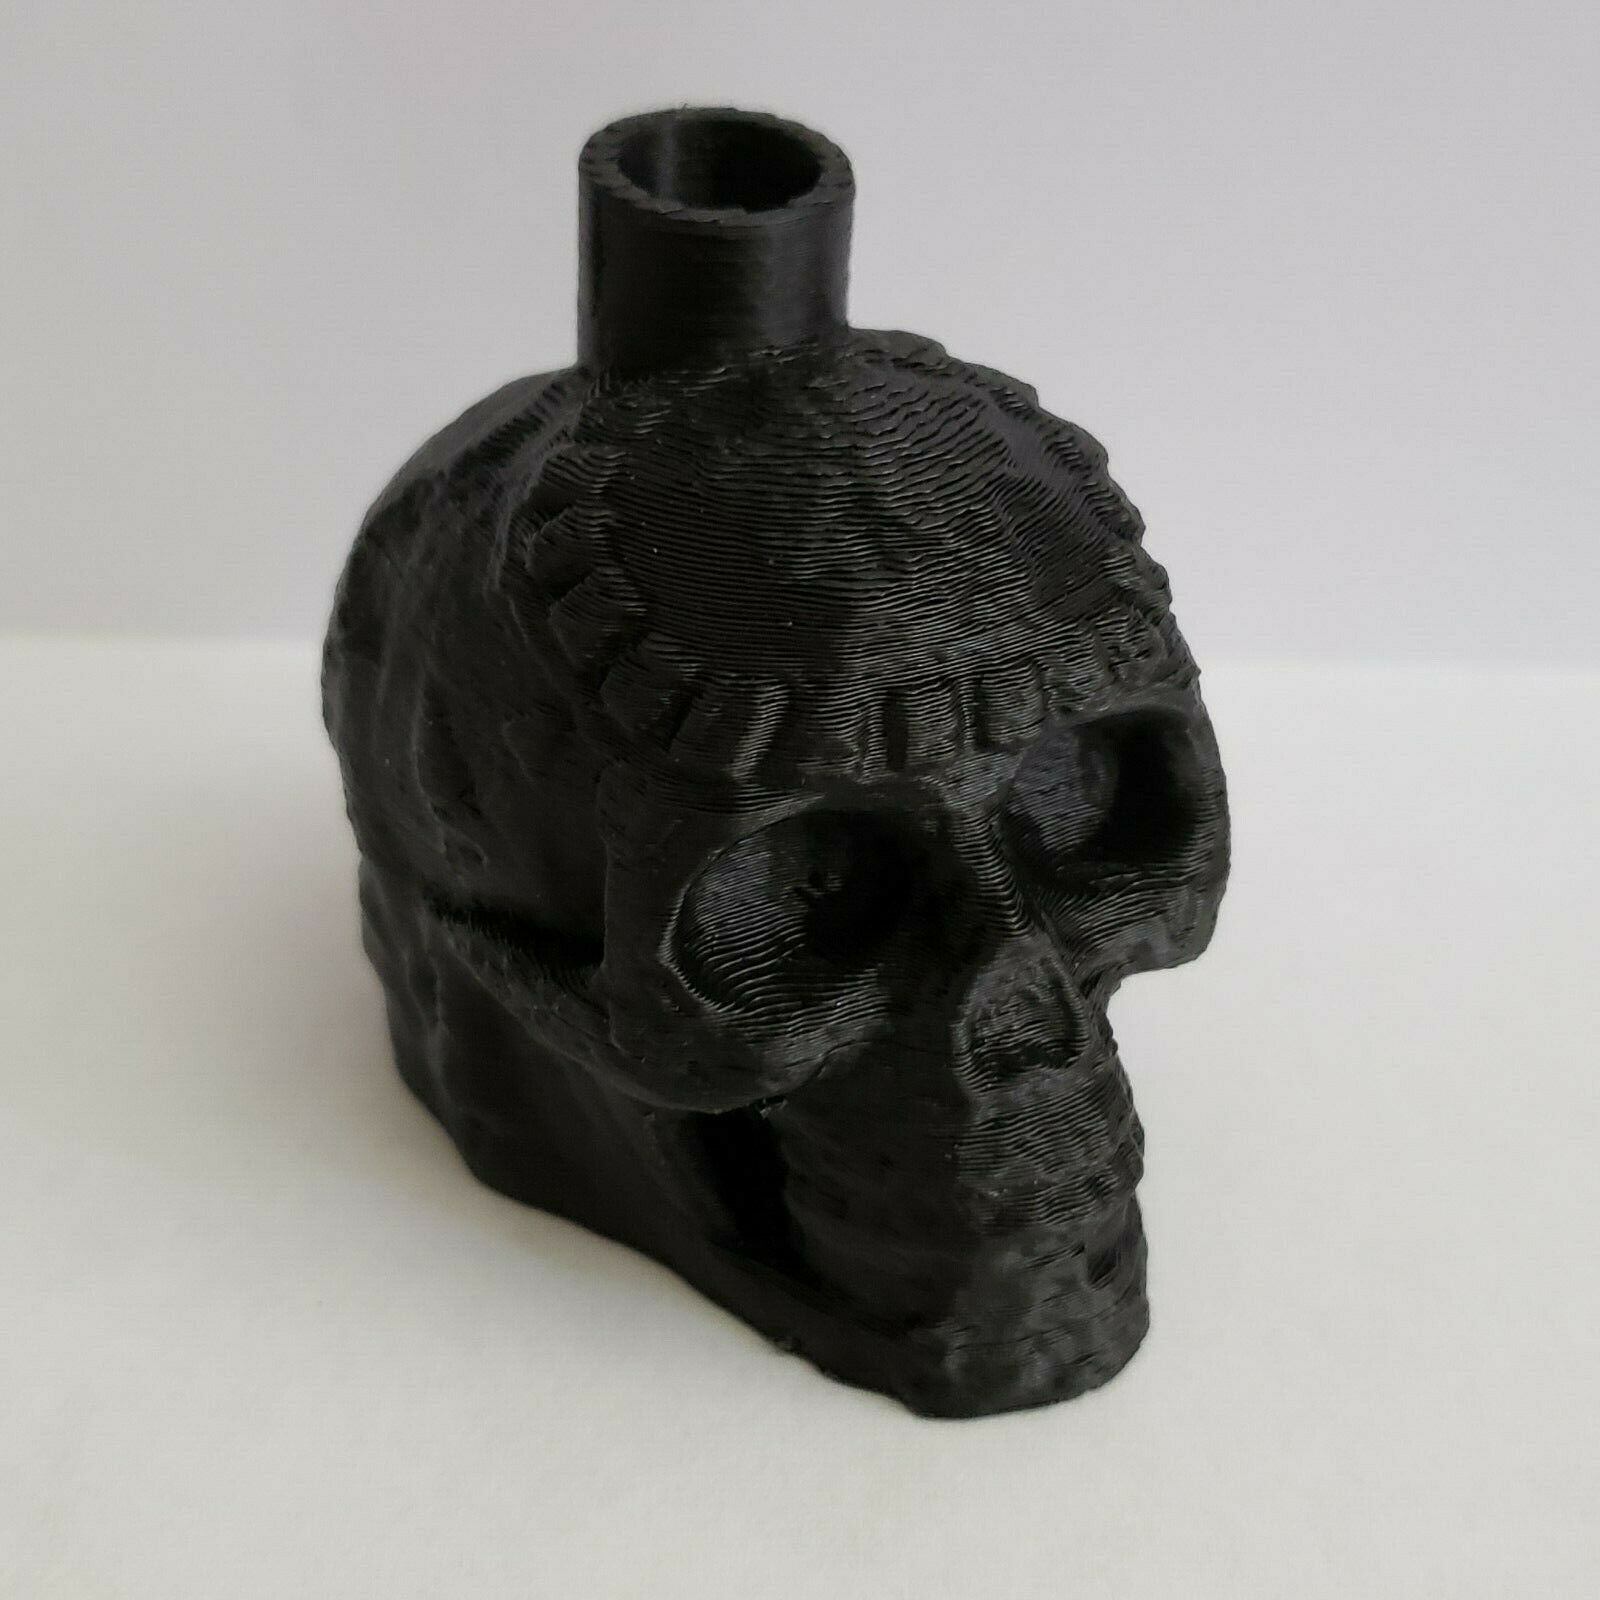 Aztec Death Whistle 